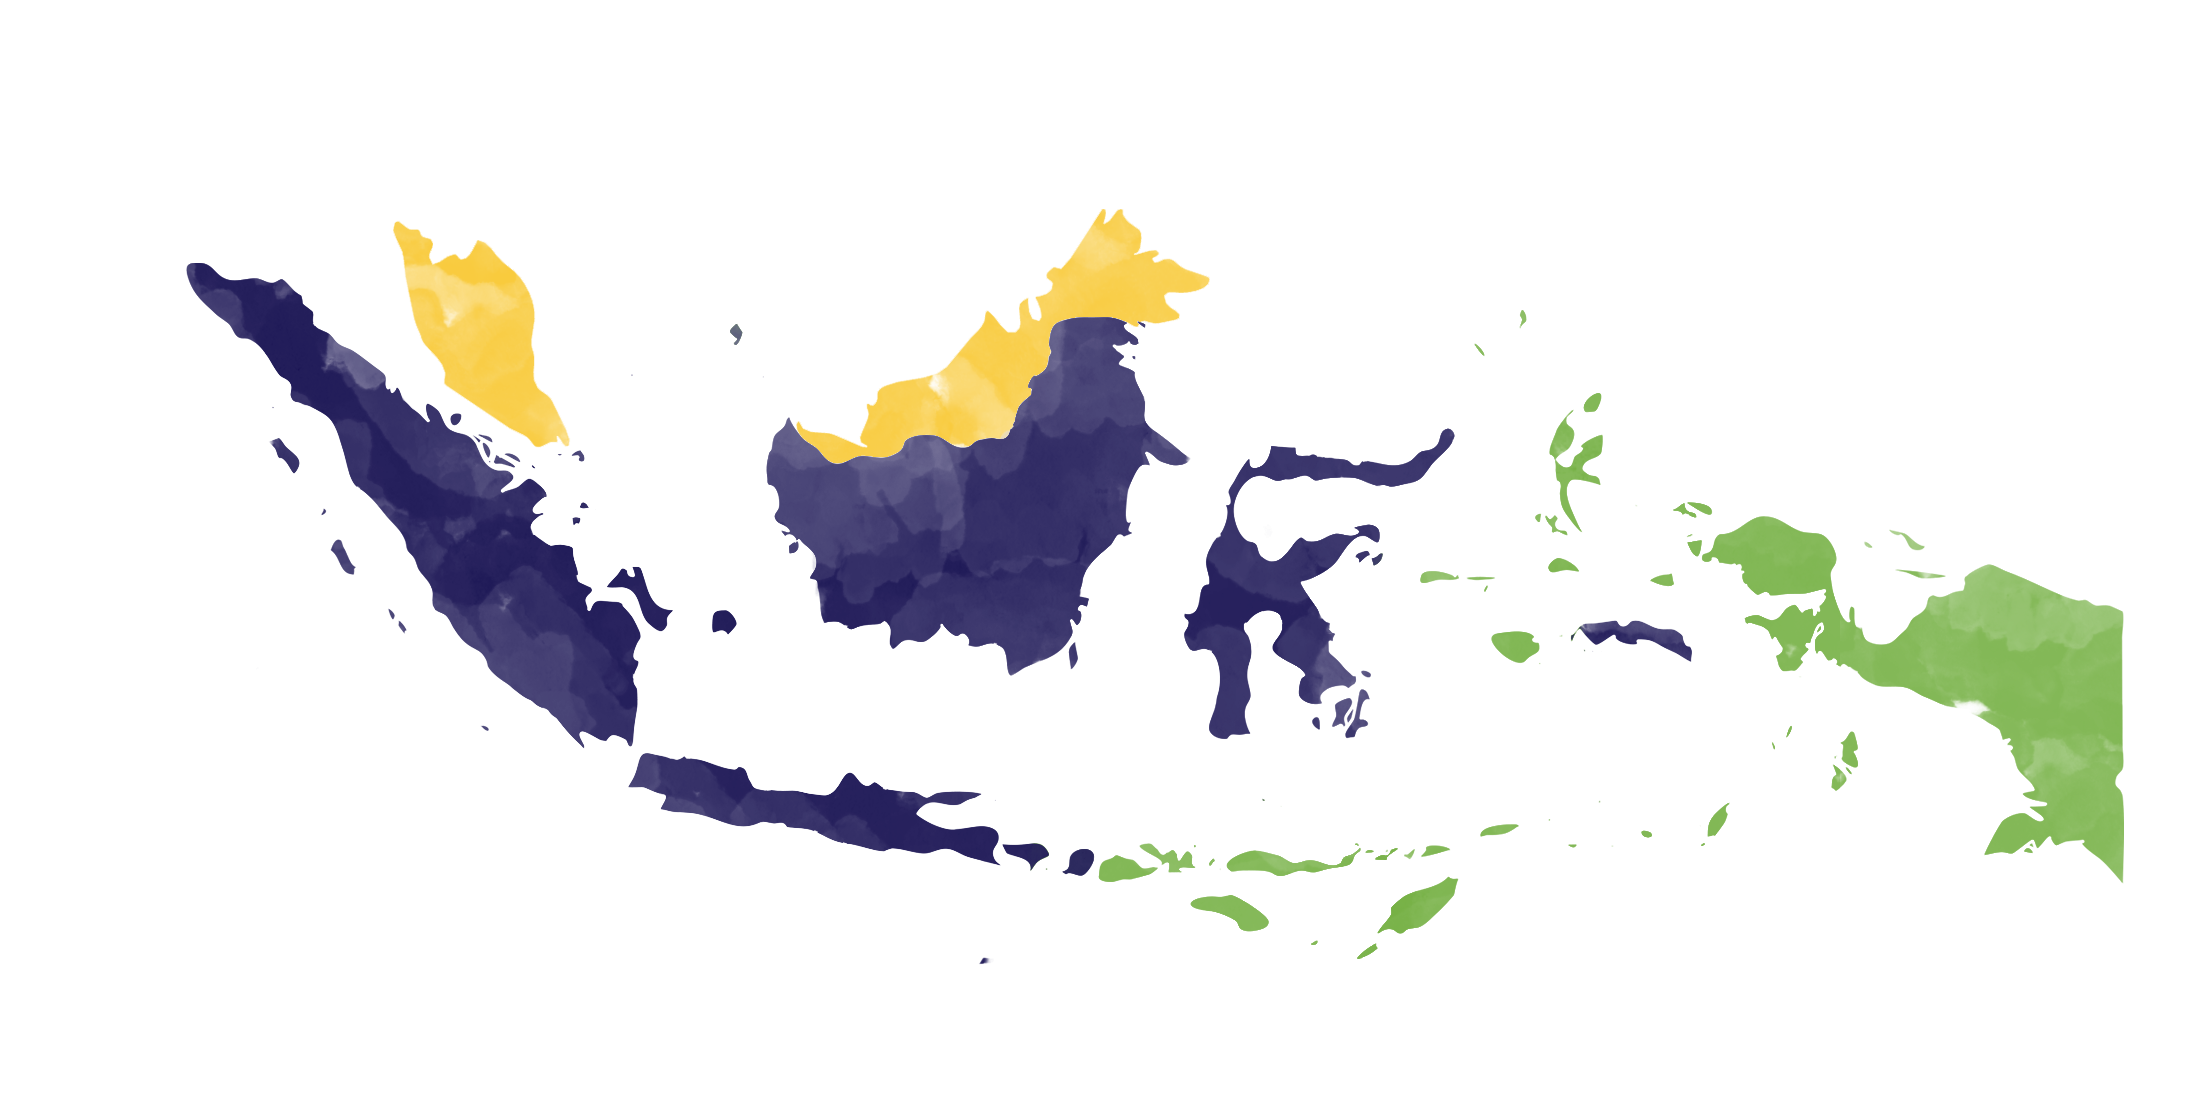 Erajaya Network Map